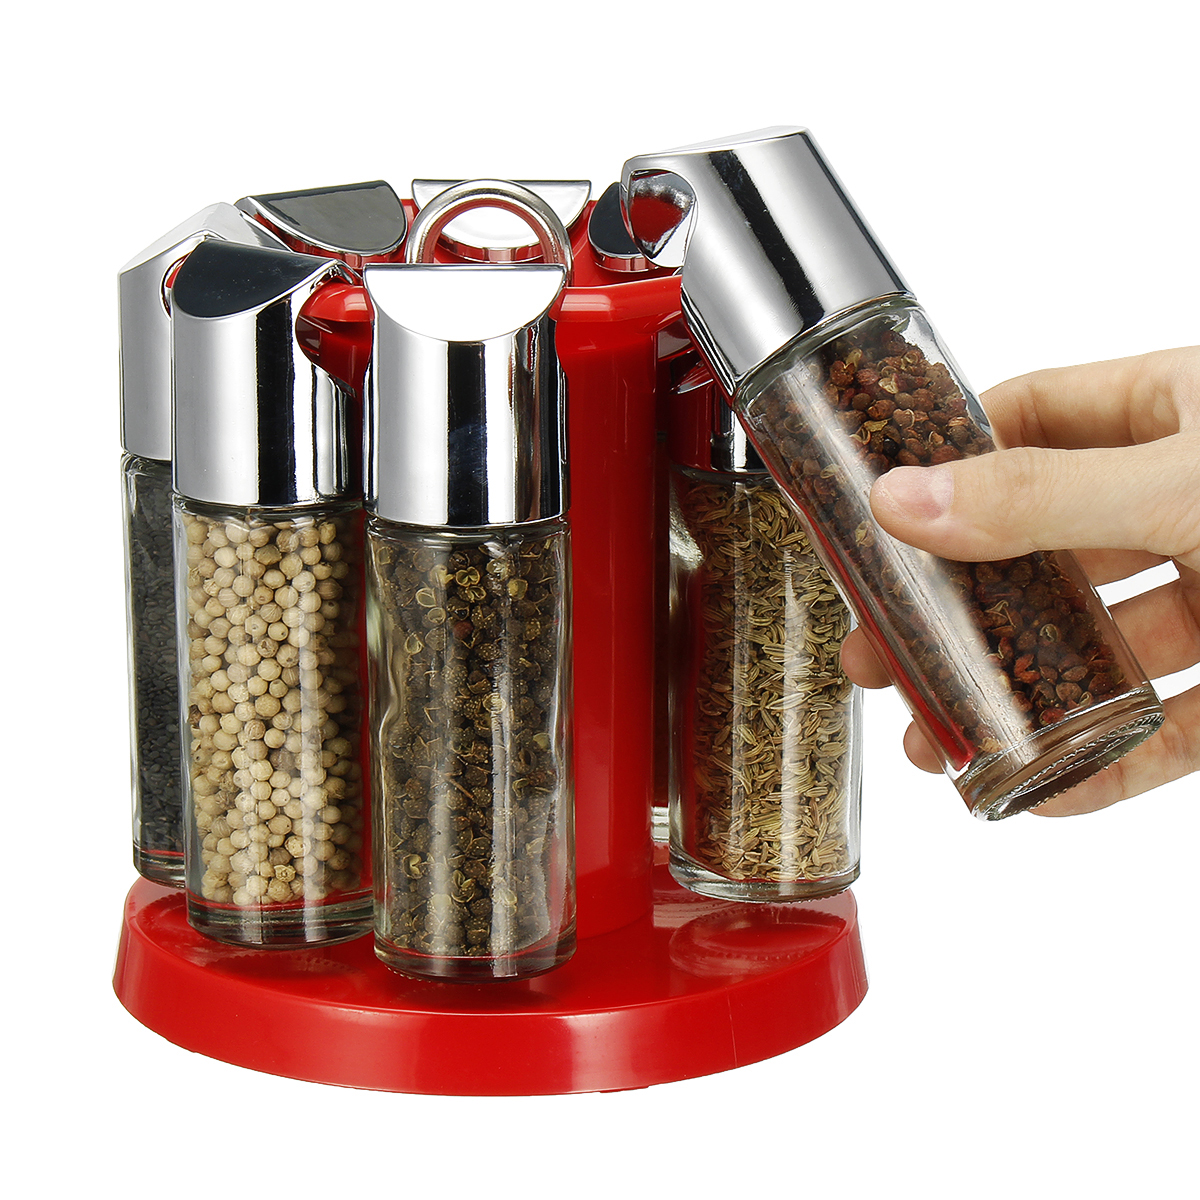 

MEIGAR 8Pcs Cruet Salt Pepper Seasoning Box Condiment Spice Bottles With Stand Holder